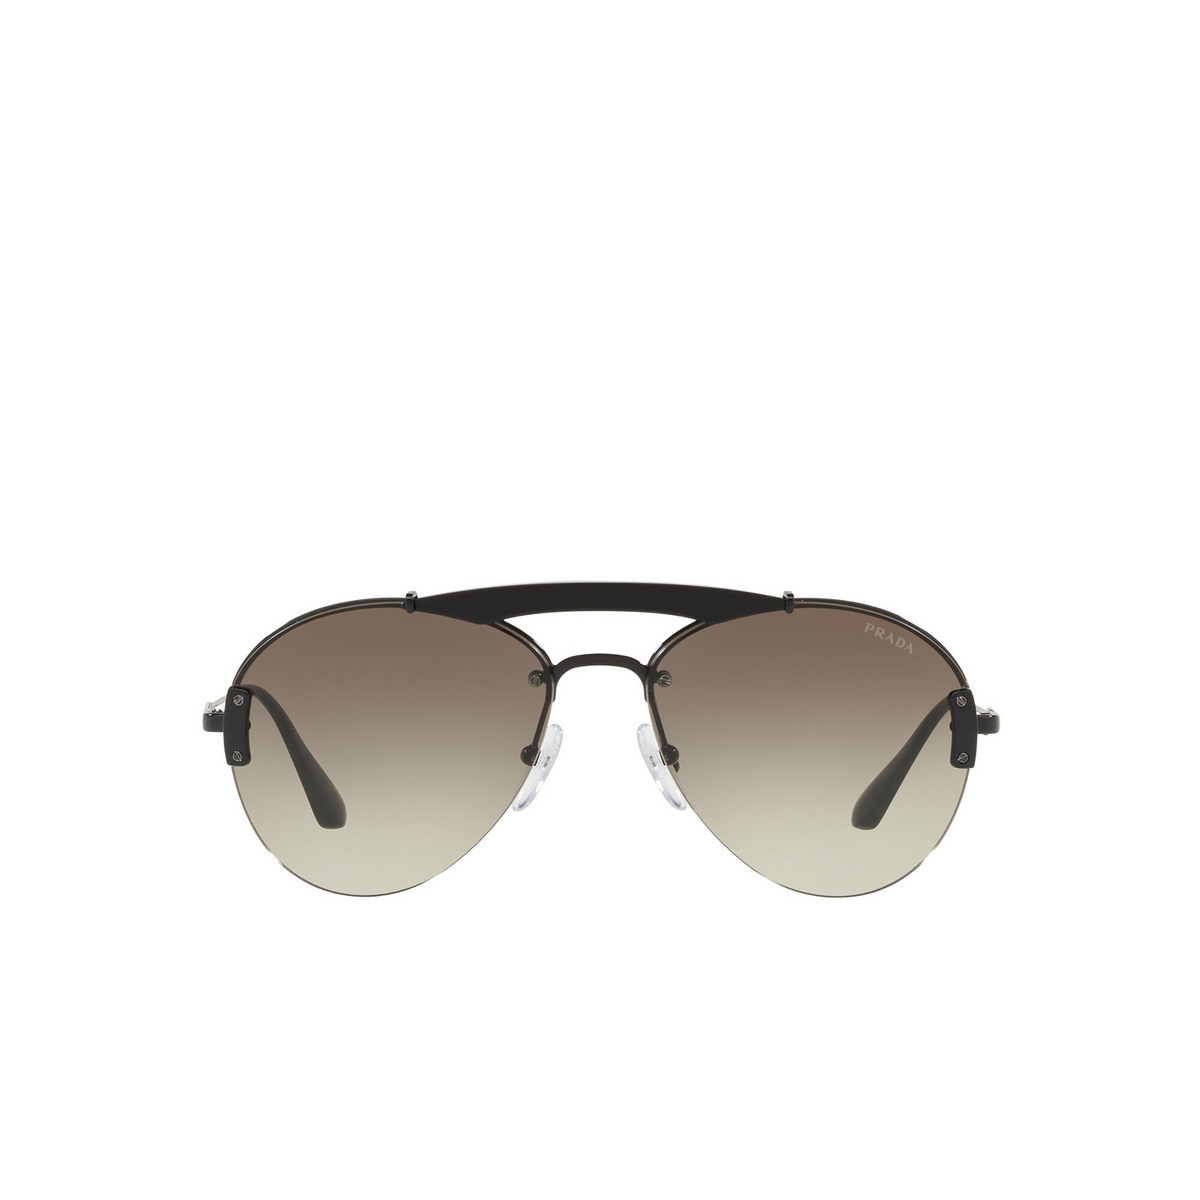 Prada® Aviator Sunglasses: PR 62US color Black 1AB5O2 - front view.